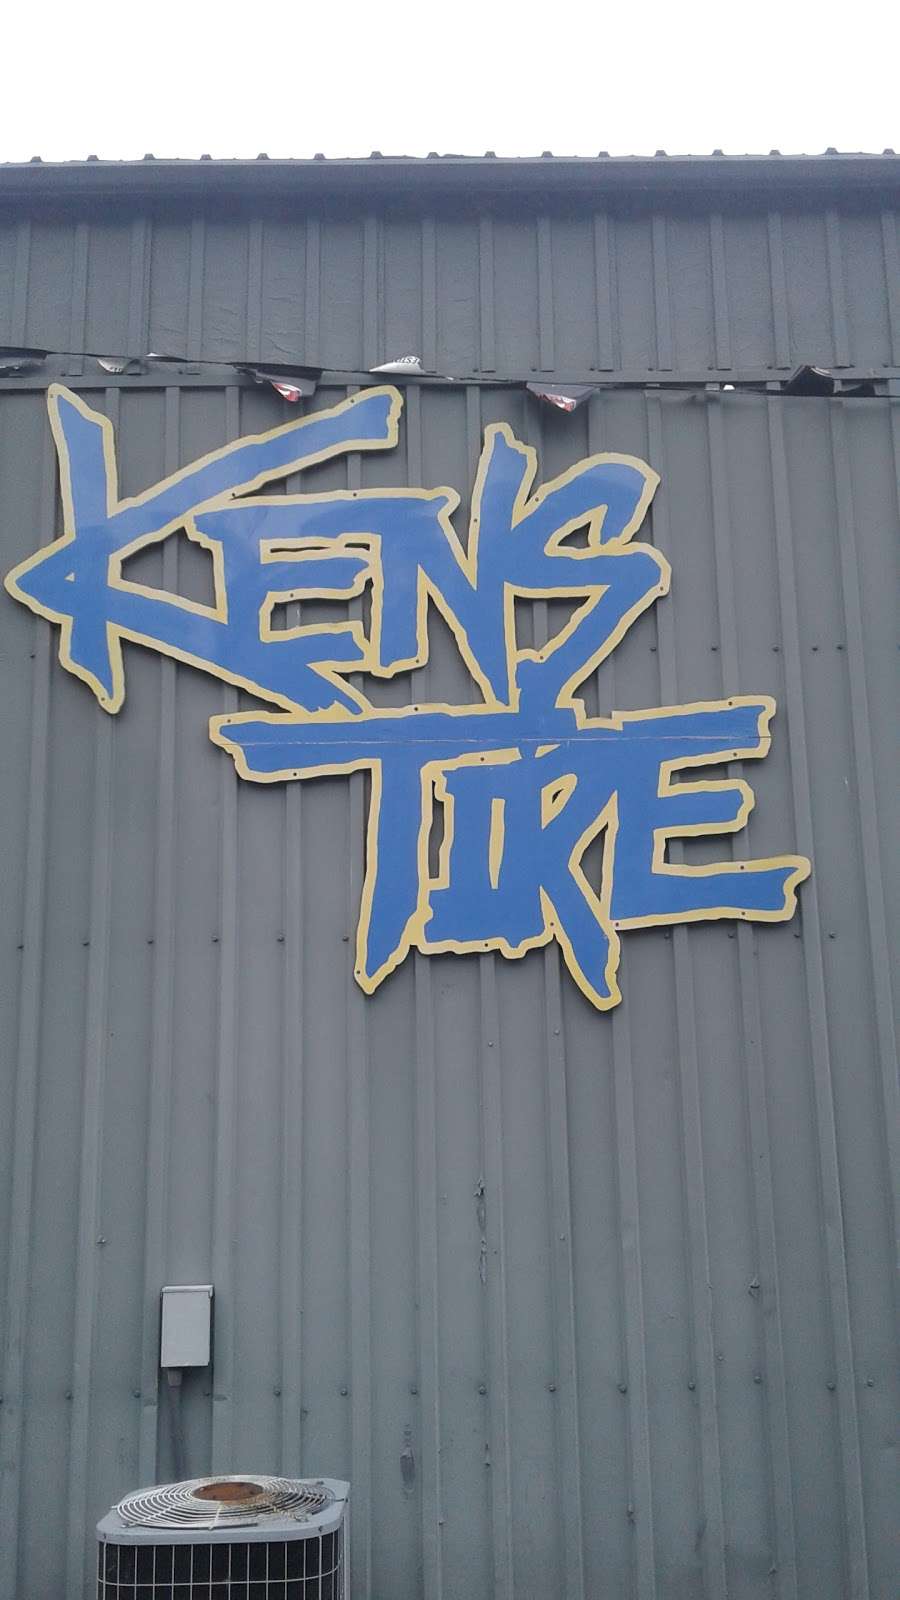 Kens Tire Co | 1420 Laurel Blvd, Pottsville, PA 17901 | Phone: (570) 622-8999